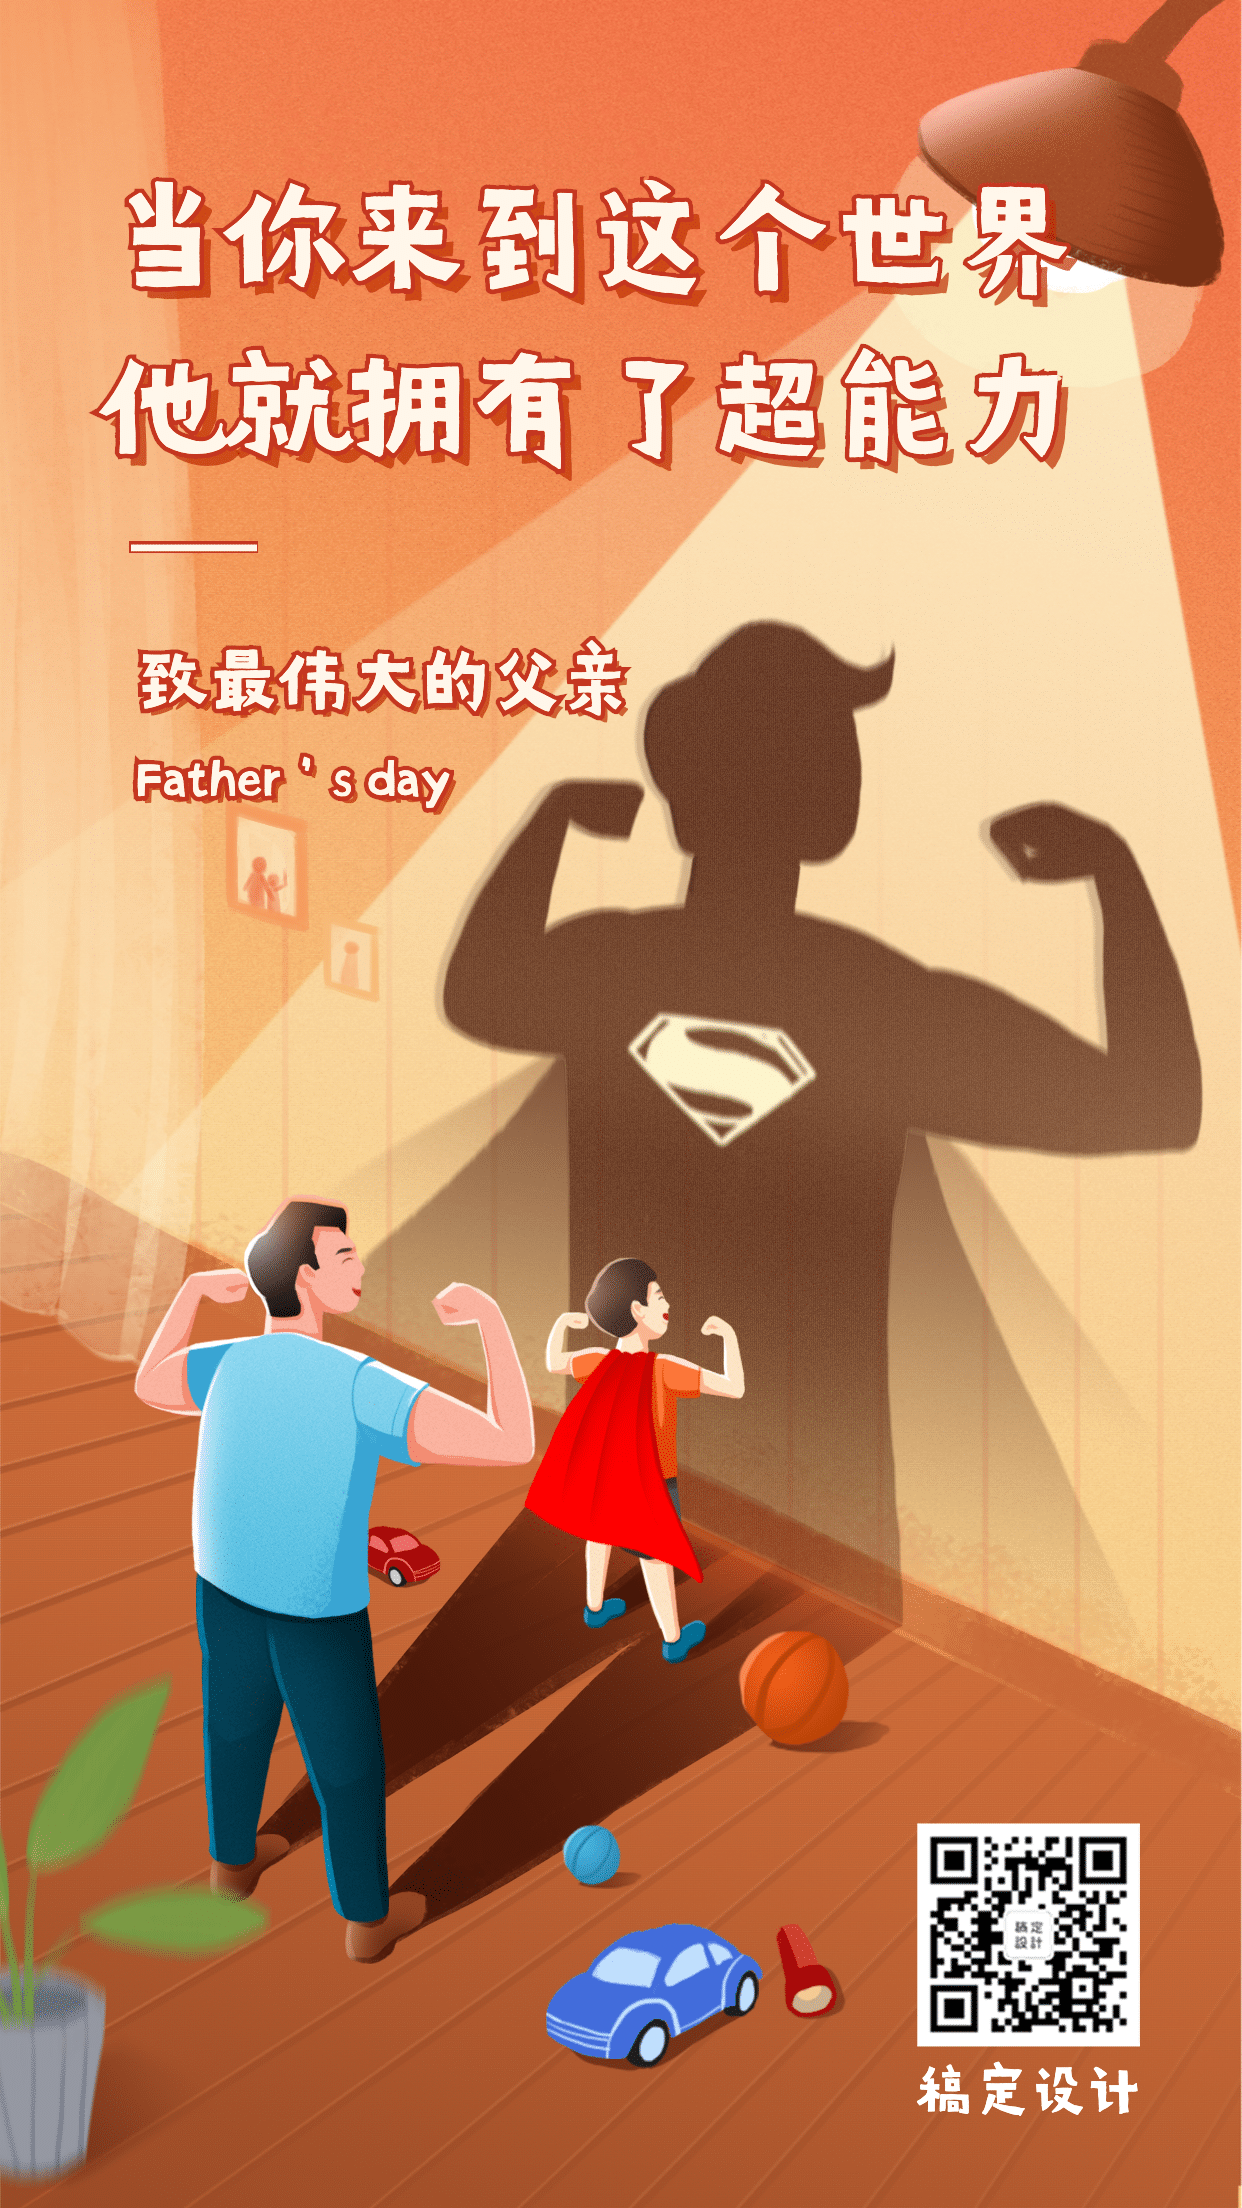 父亲节祝福超人插画手机海报